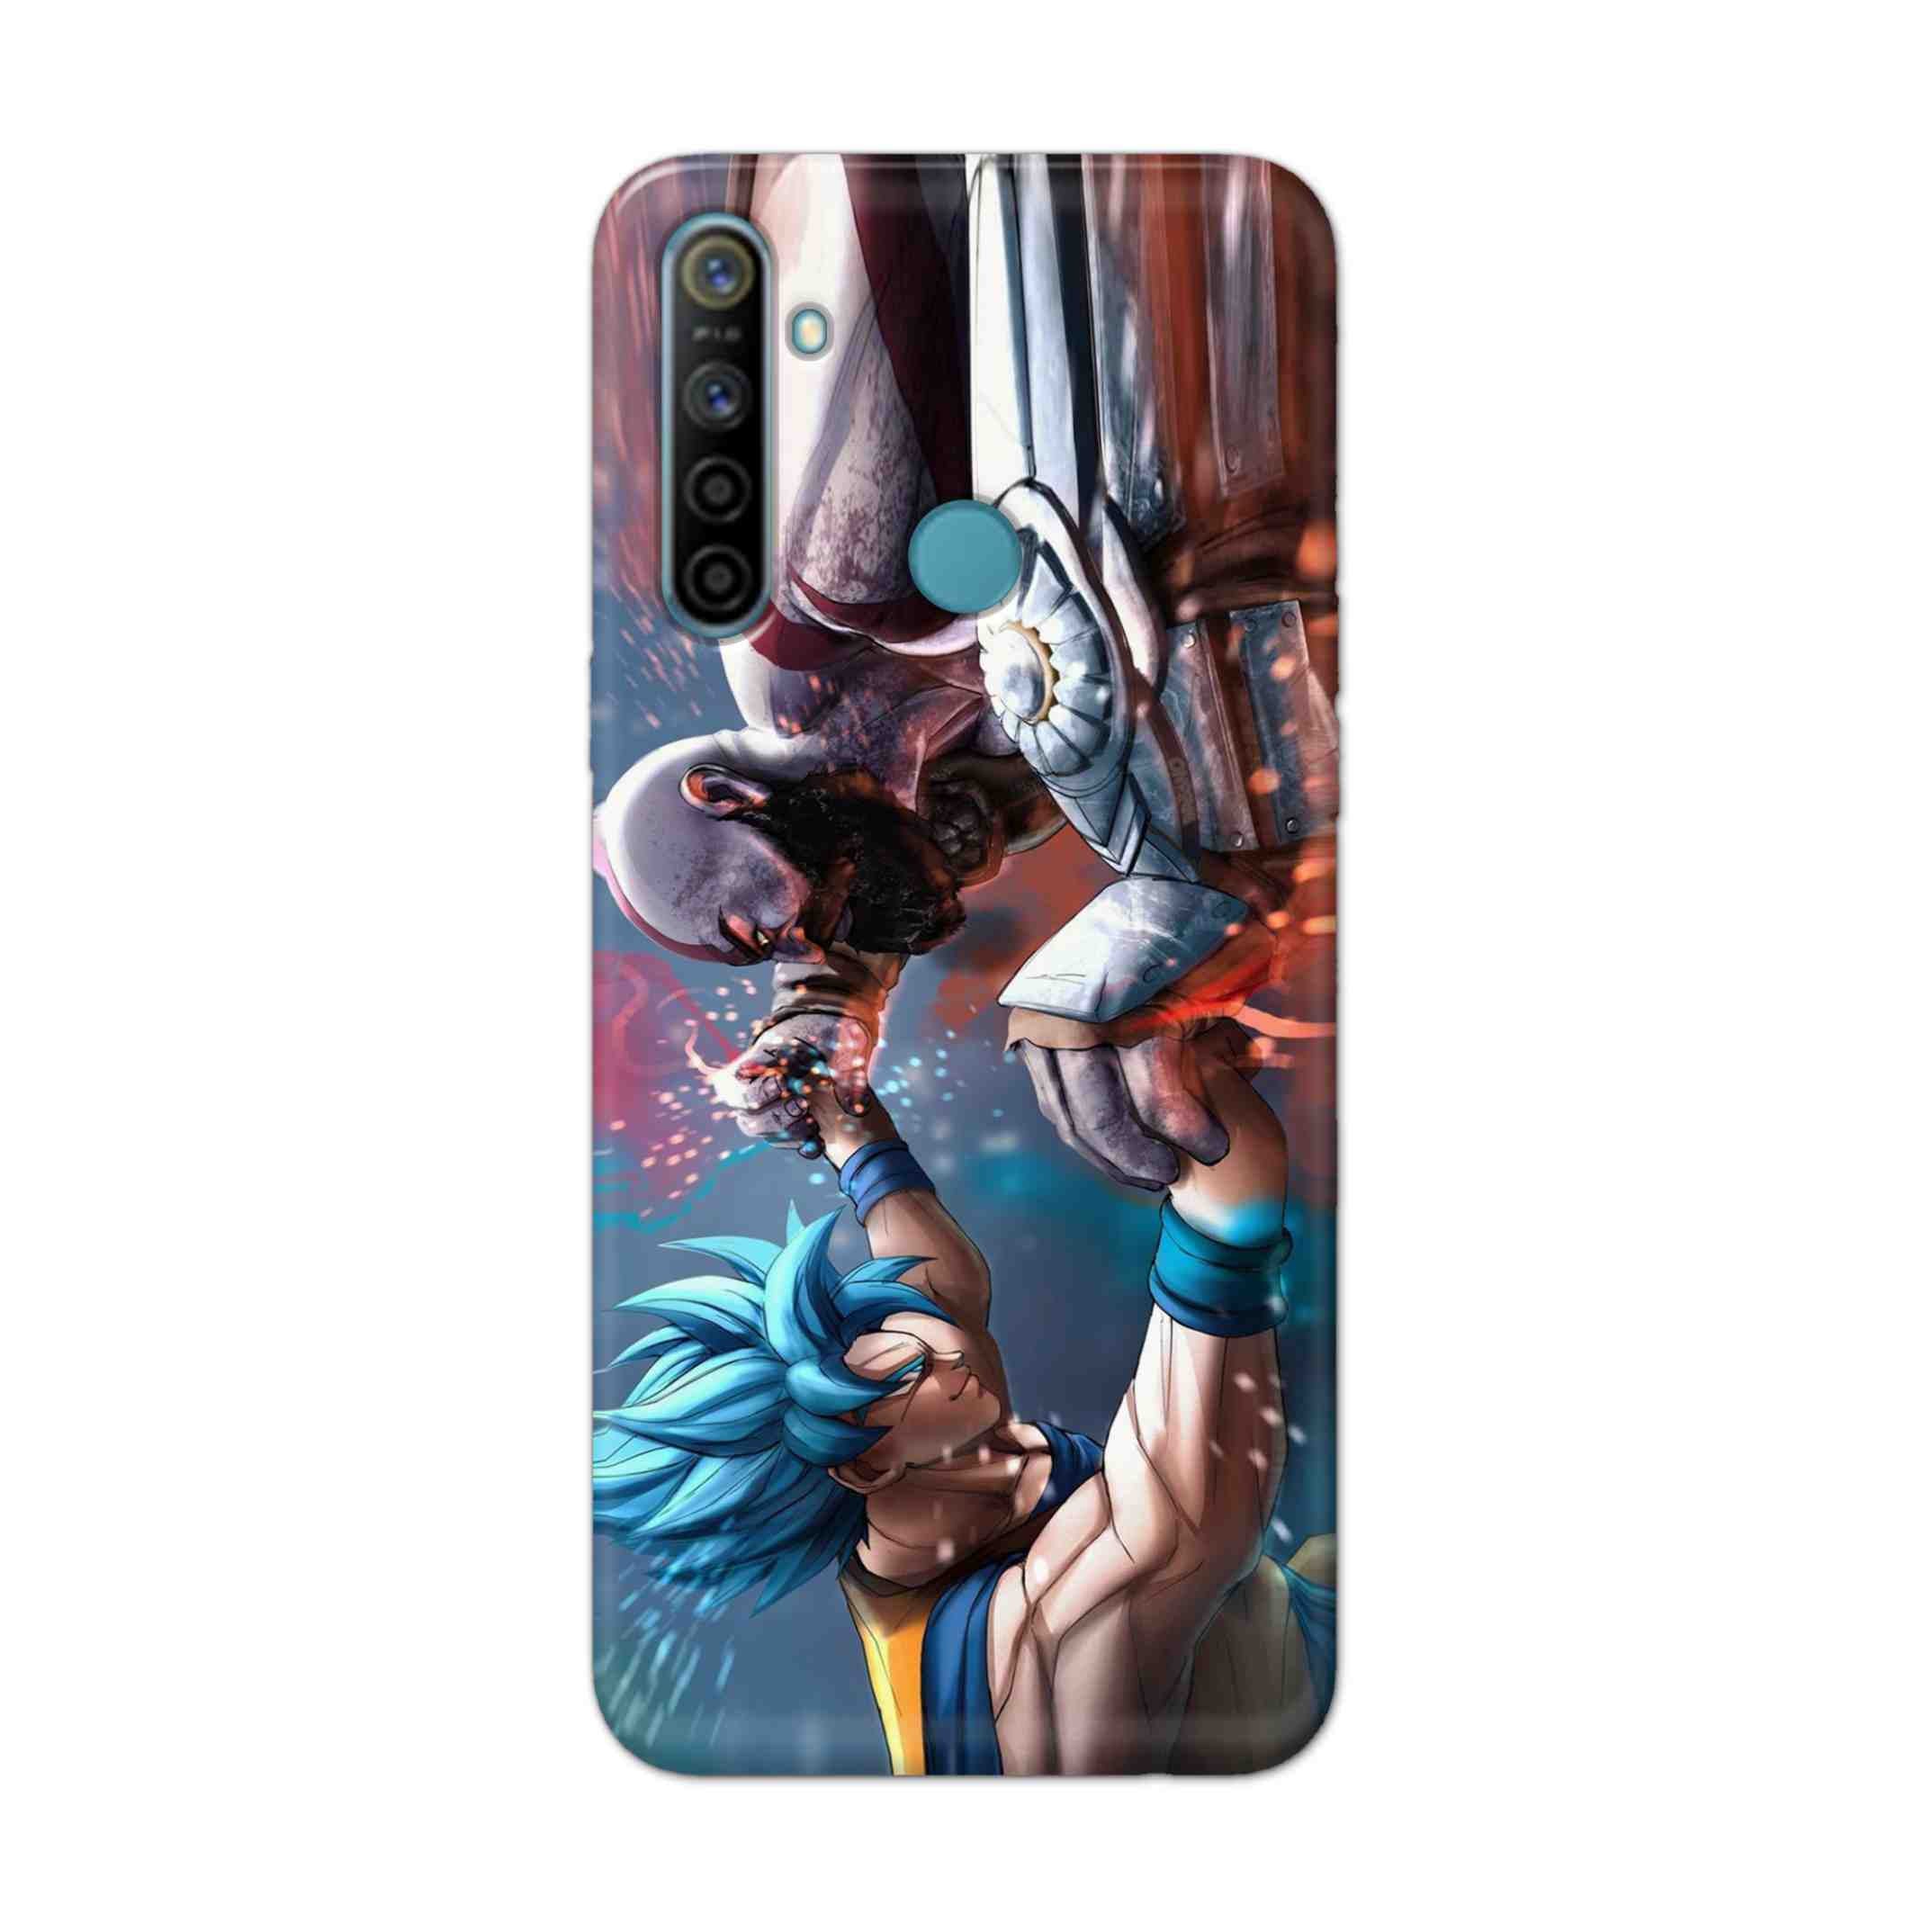 Buy Goku Vs Kratos Hard Back Mobile Phone Case Cover For Realme 5i Online